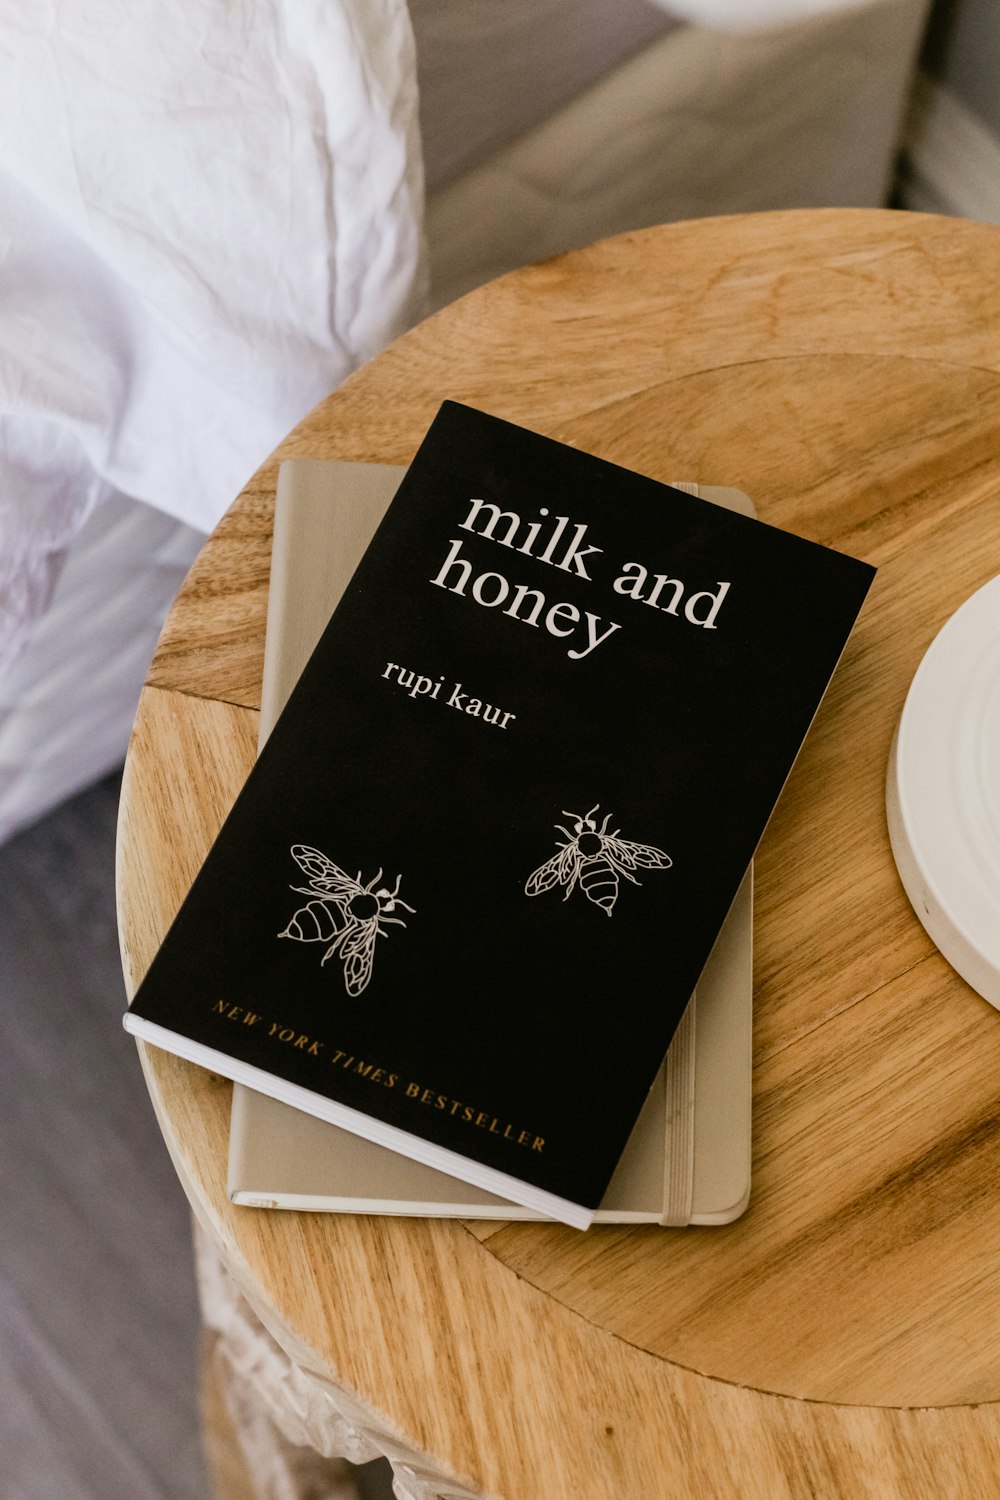 Milch und Honig von Rupi Kaur Buch auf Beistelltisch